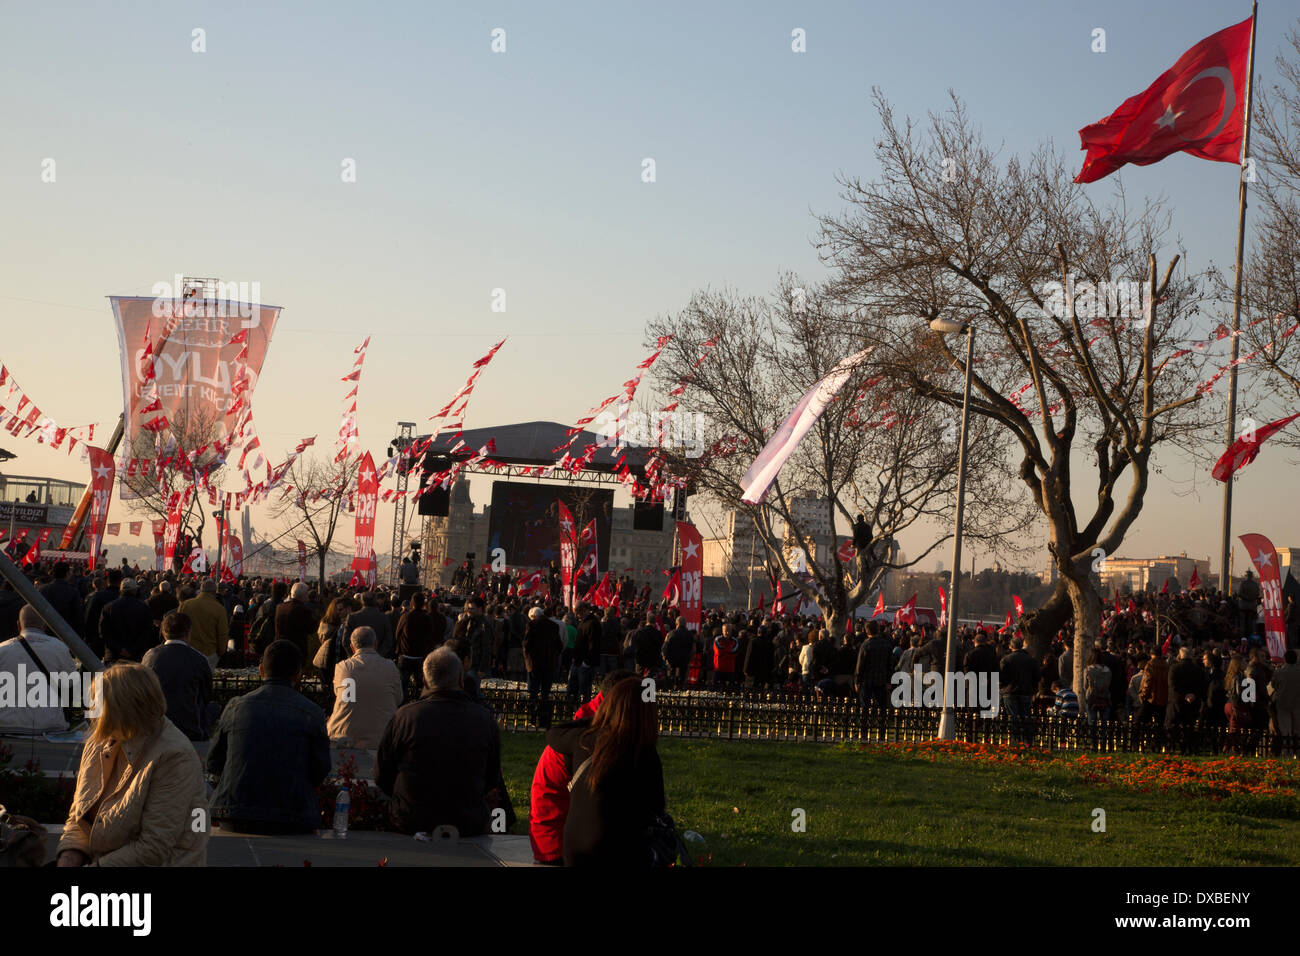 Kadikoy, Istanbul -- drapeaux de parti sont jusqu'à la Turquie se prépare pour les élections régionales, qui devrait avoir lieu le 30 mars. Photo par Bikem Ekberzade Banque D'Images